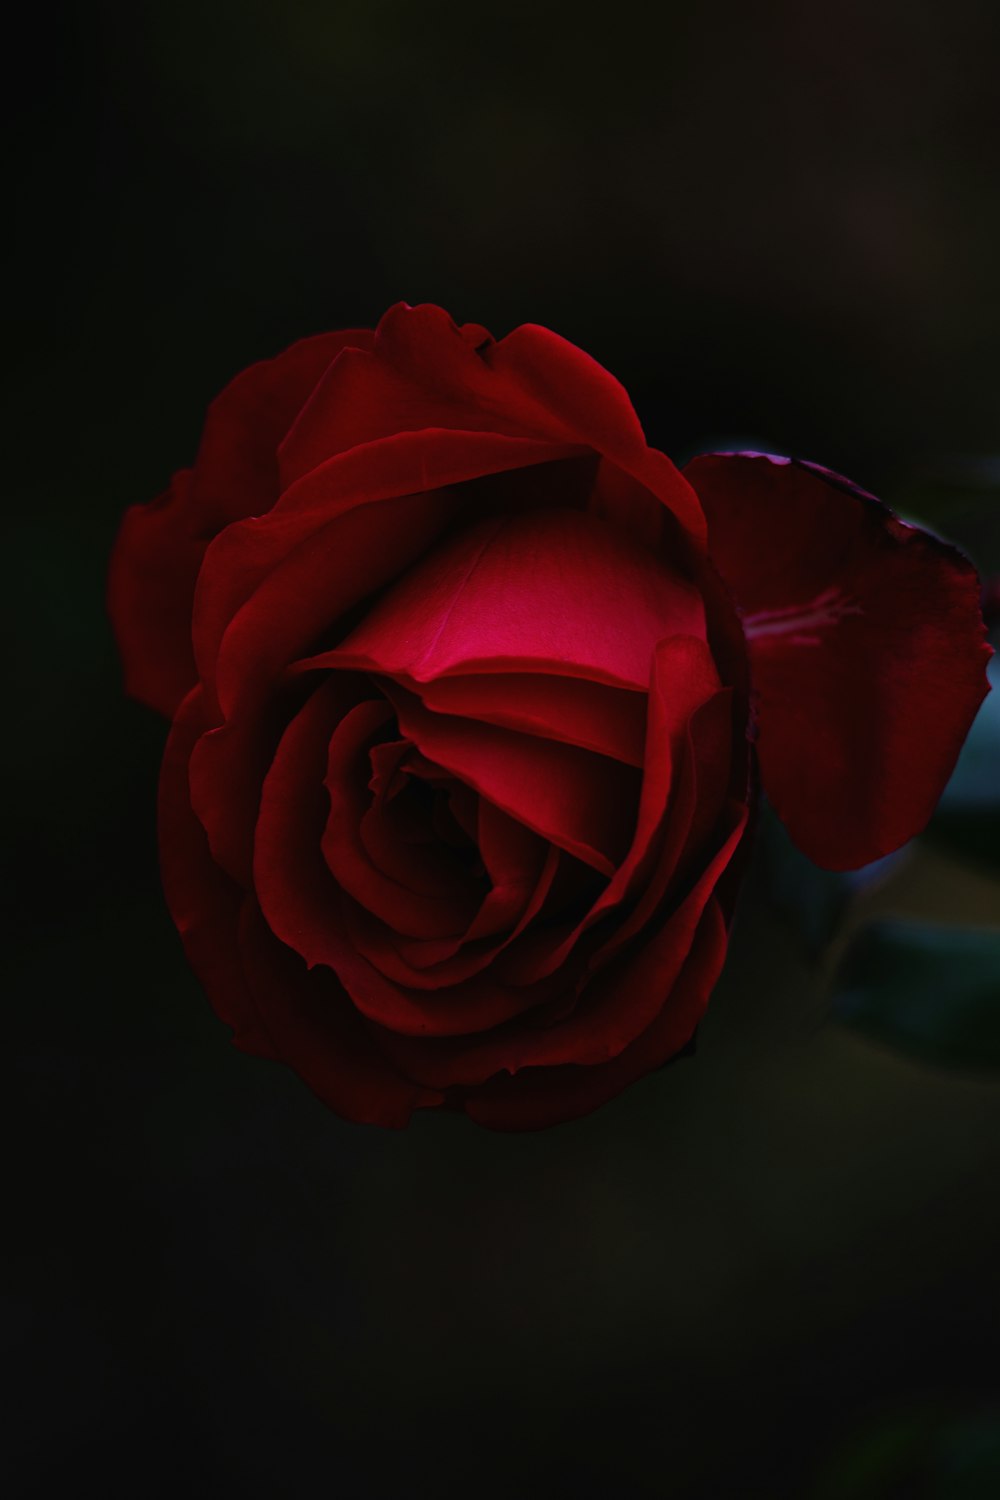 Bức hình về những bông hoa hồng đỏ sẽ đem đến không khí lãng mạn, ngọt ngào và đầy cảm xúc. Hãy gửi tặng những thân yêu của bạn một bó hoa hồng đỏ để thể hiện tình cảm đẹp nhất của bạn!